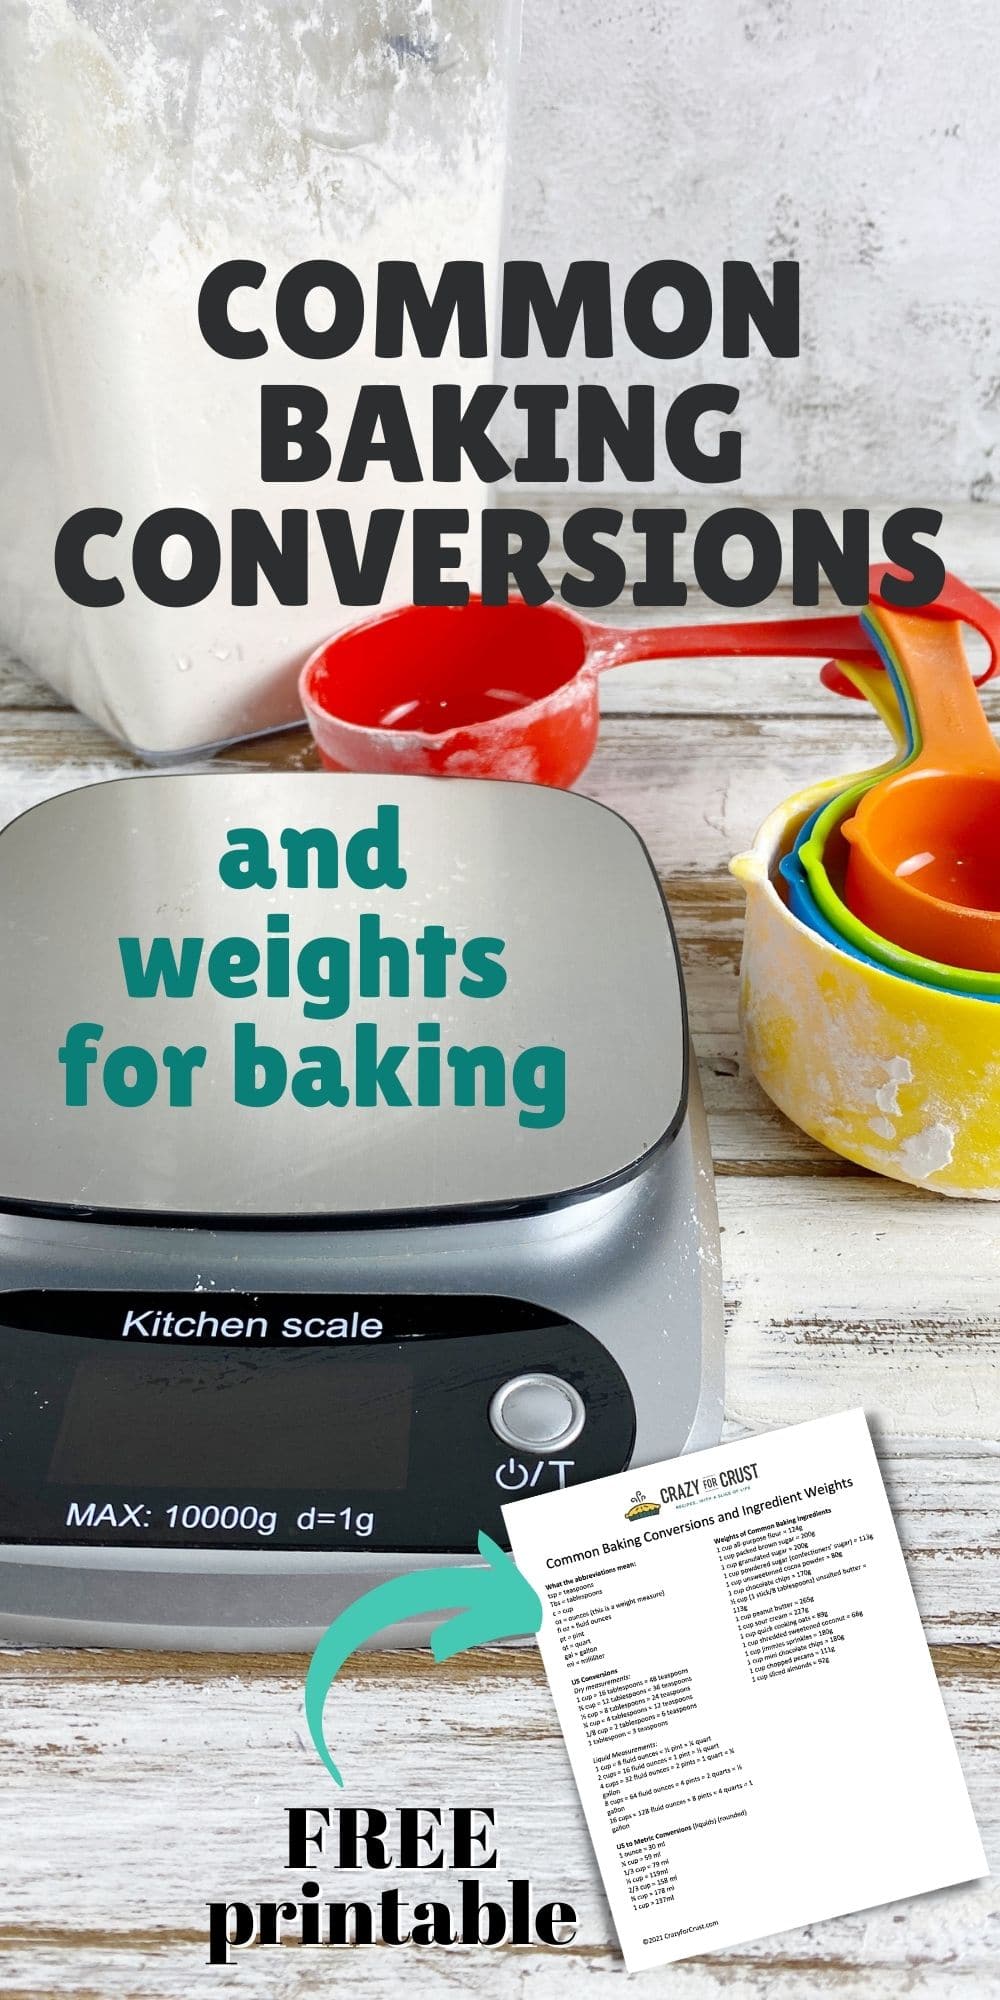 Kitchen Measurements  Simple Conversion Guide